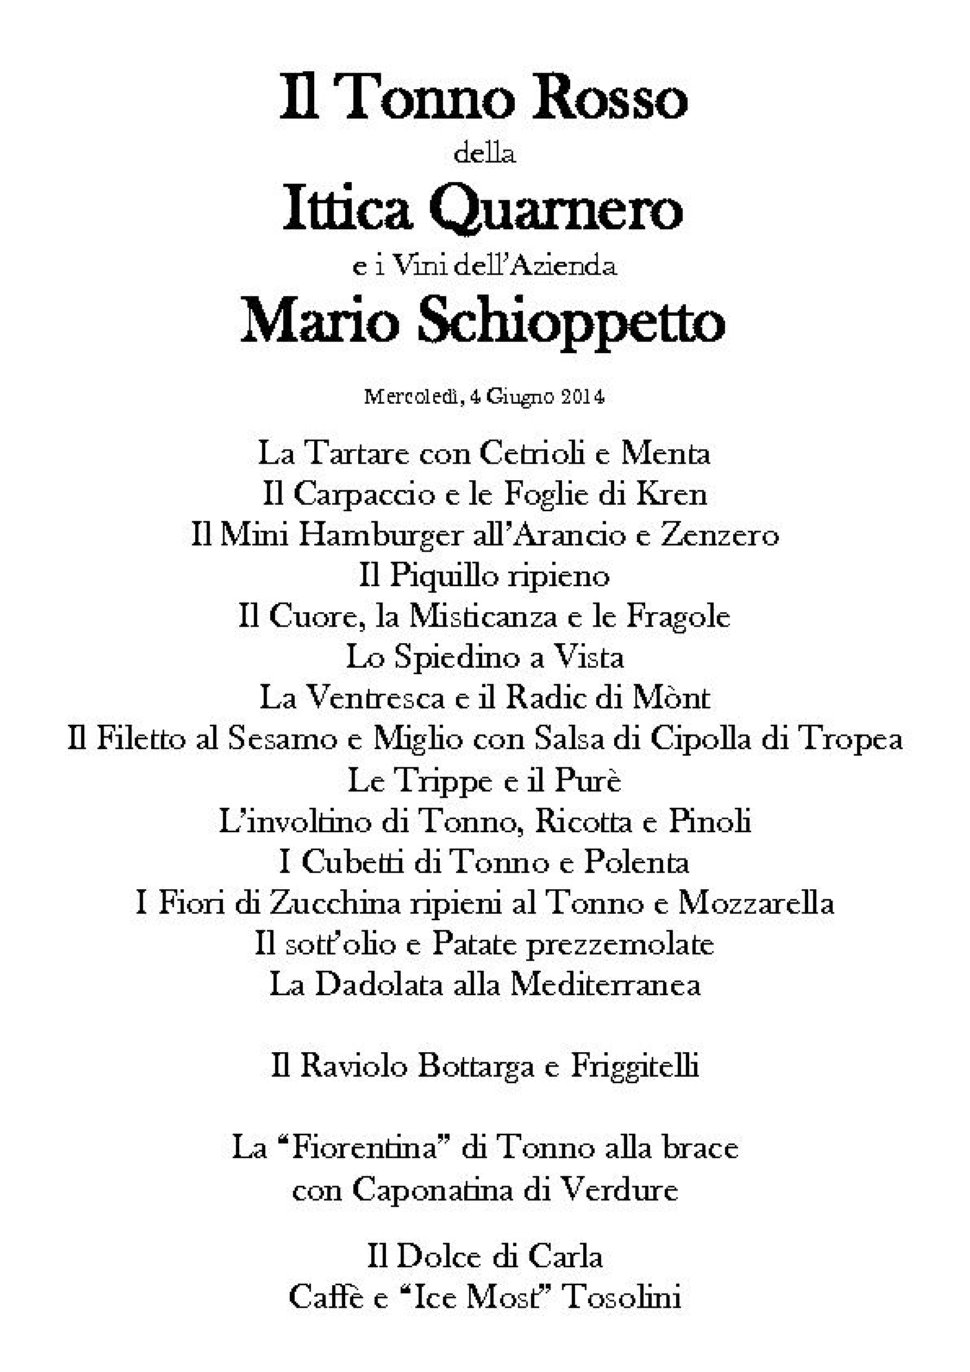 Il Tonno rosso dell'Ittica Quarnero e i vini di Mario Schioppetto, DaNando mercoledì 4 Giugno.